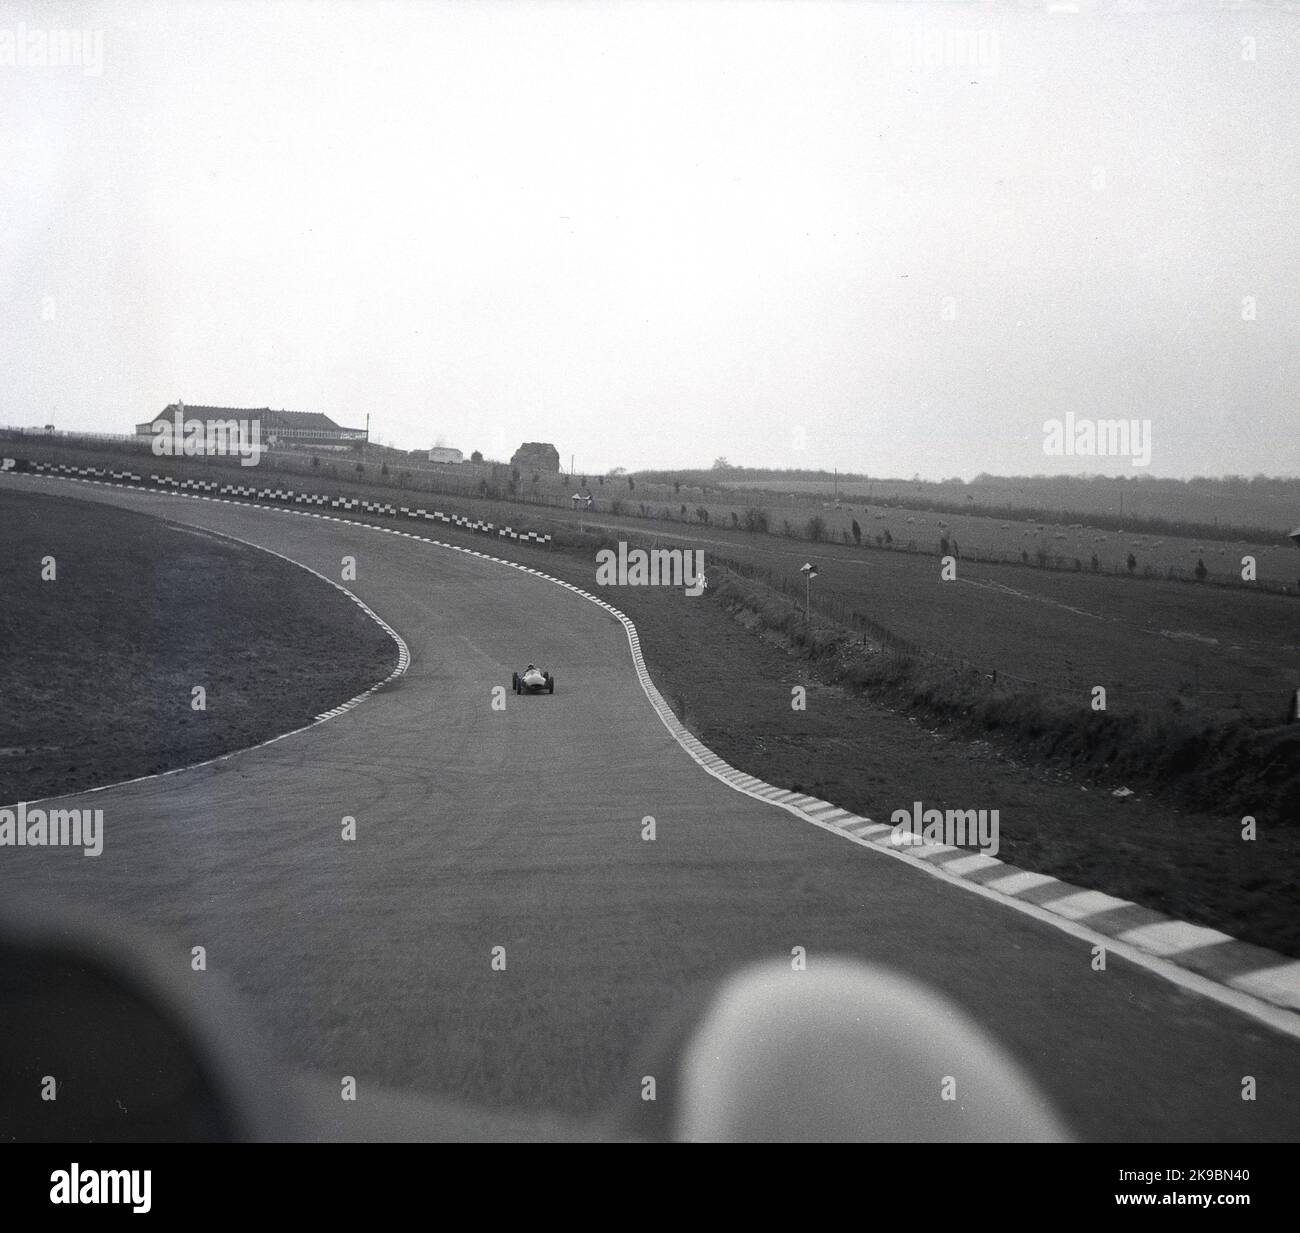 1959, historisch, Cooper's Racing School, Brands Hatch, Kent, England, Großbritannien, Rennwagen auf Kurs, gerade runter Stockfoto